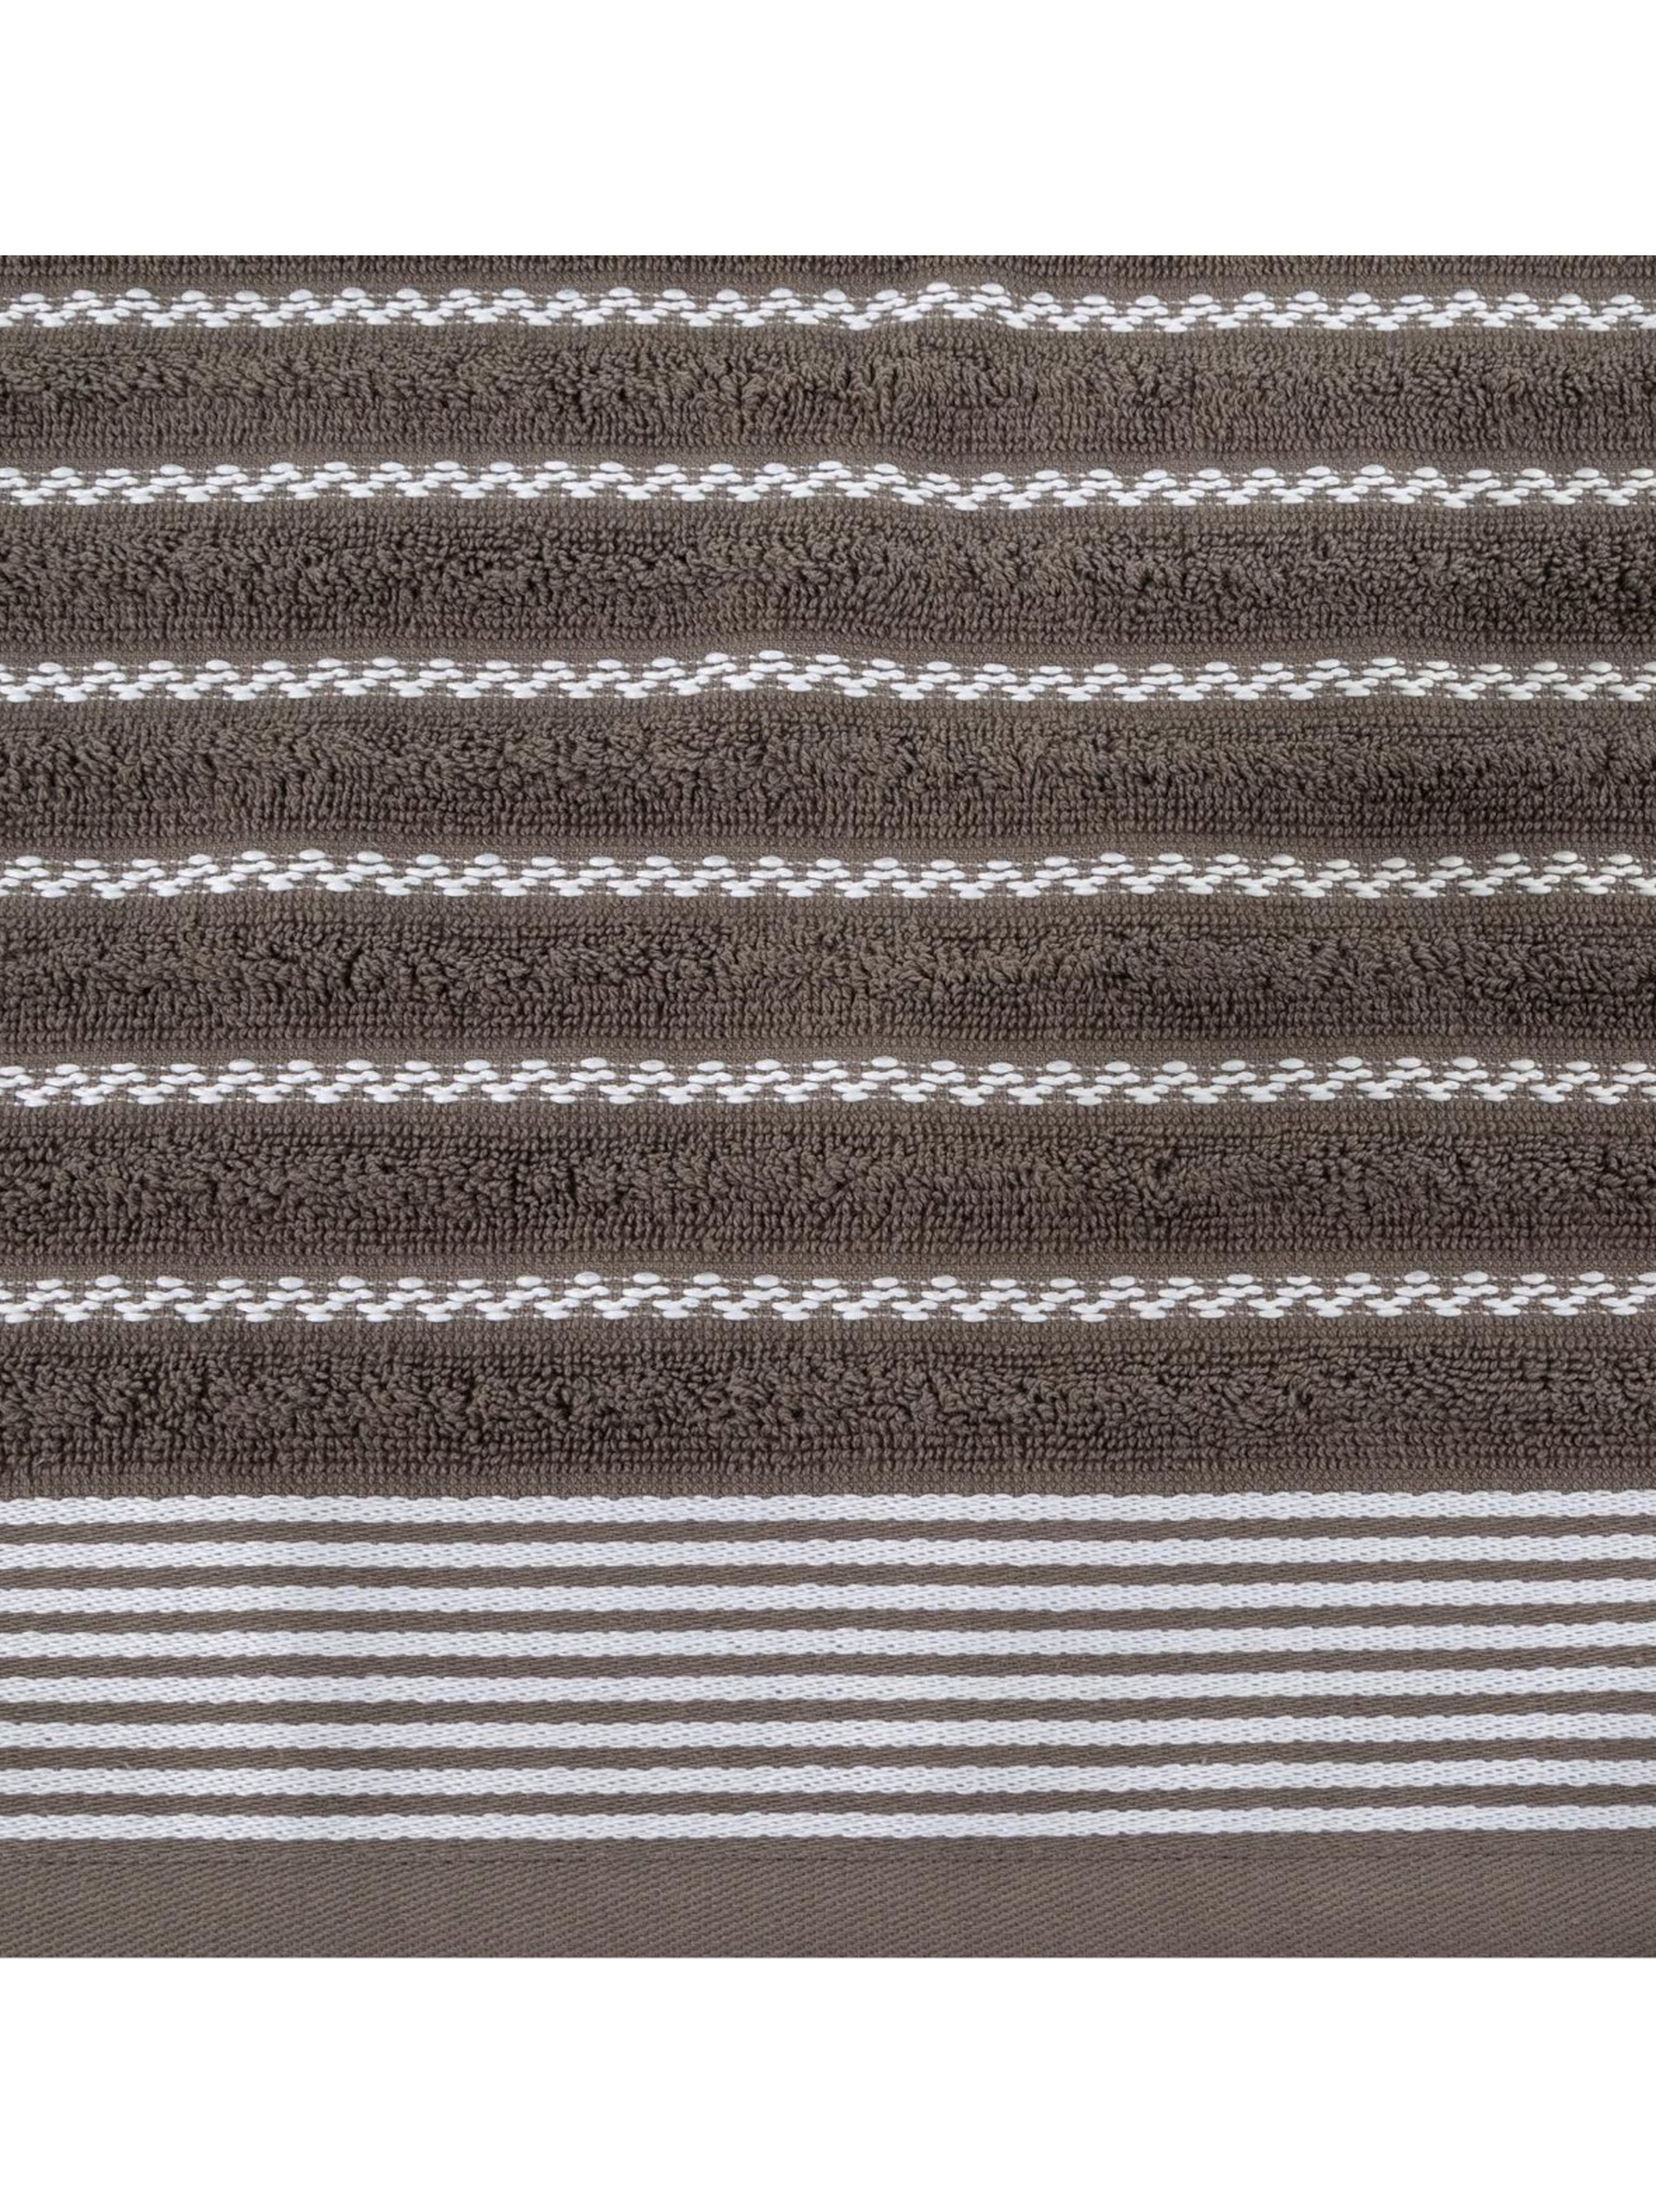 Ręcznik d91 leo (03) 70x140 cm ciemnobrązowy